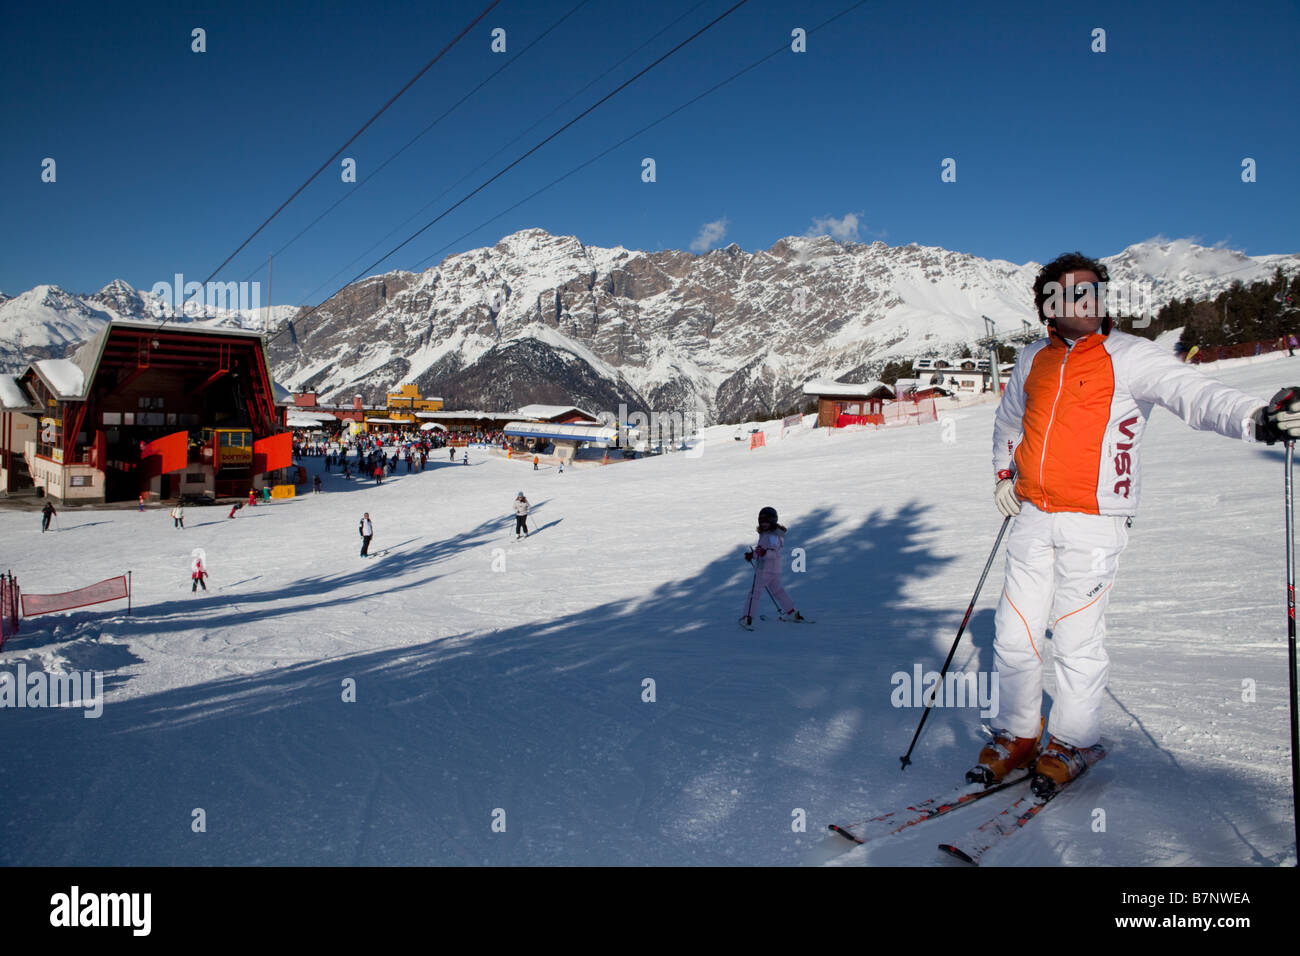 Bormio 2000 winter ski season, ITALIAN ALPS, Lombardy, Italy Stock Photo